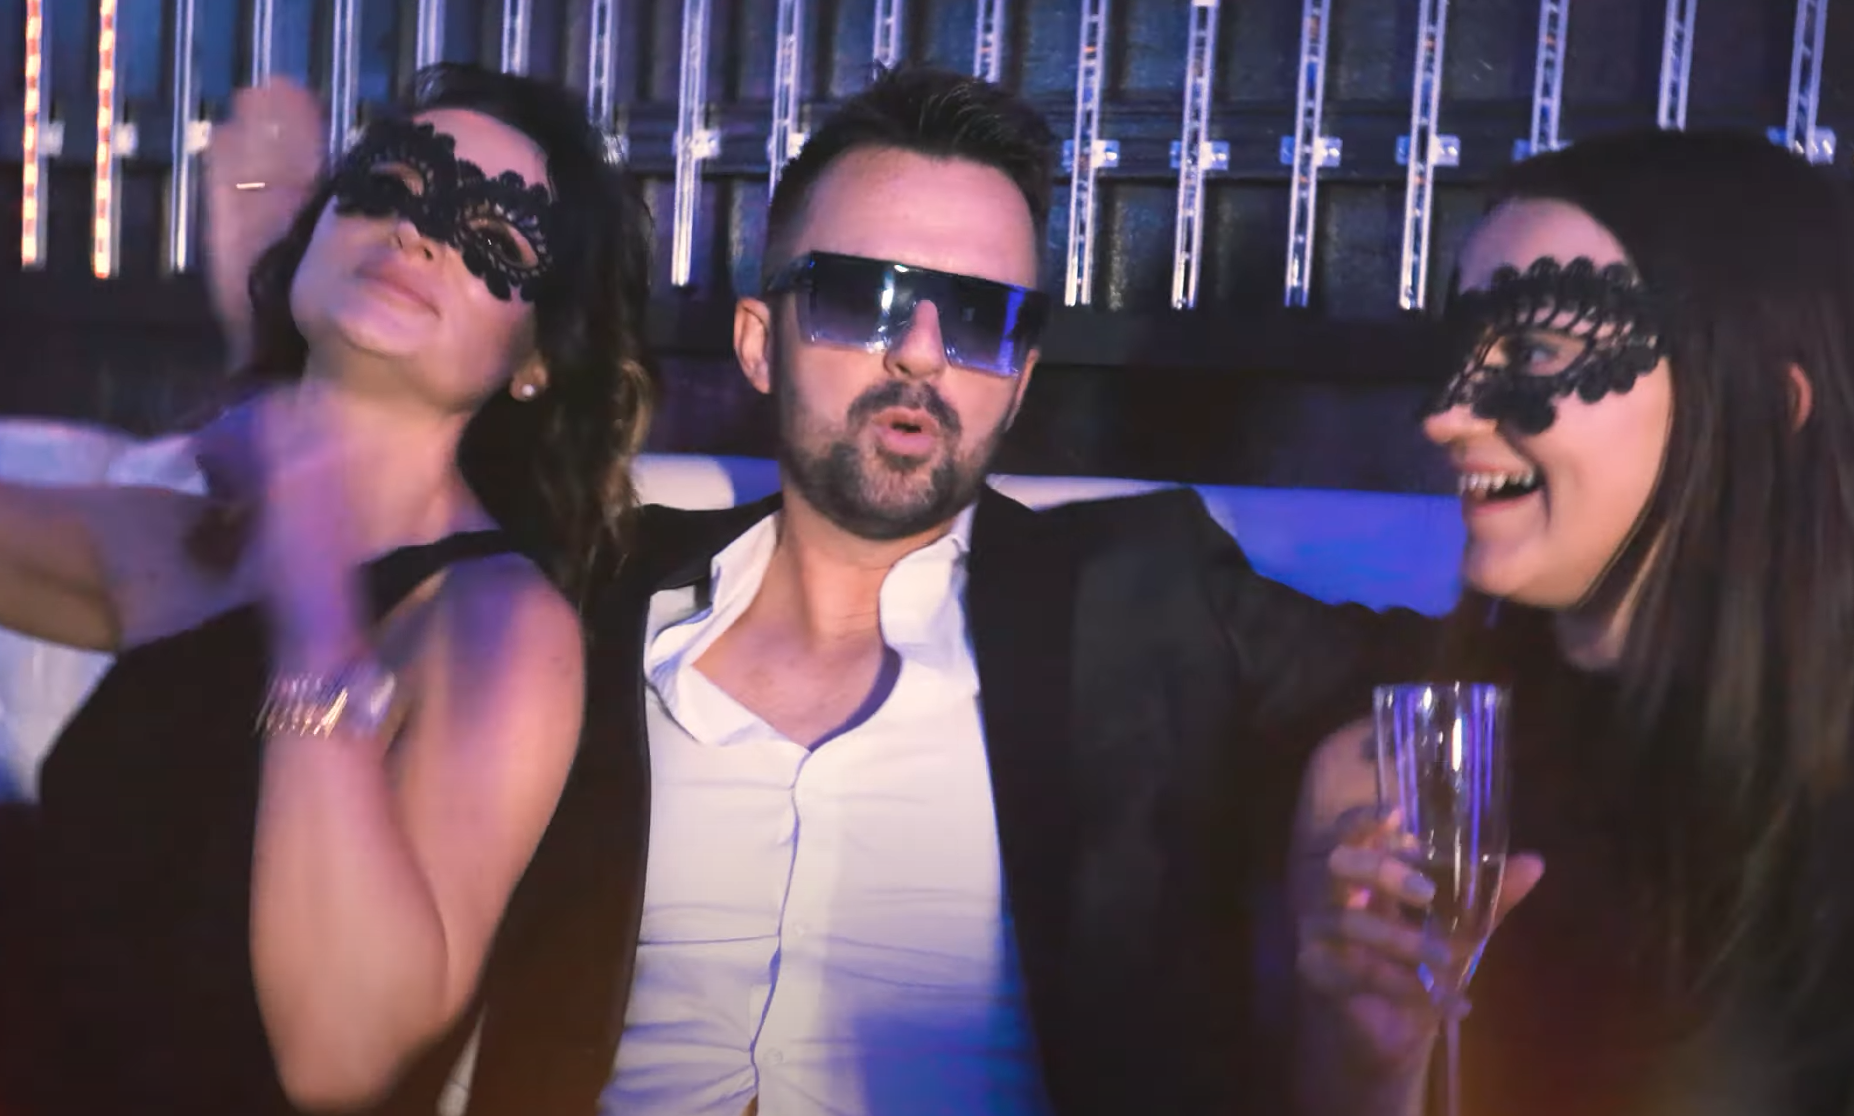 'Jest impreza' Wokalista disco polo zdecydował się podbić rynek muzyczny taneczną premierą?! Zobaczcie NOWOŚĆ